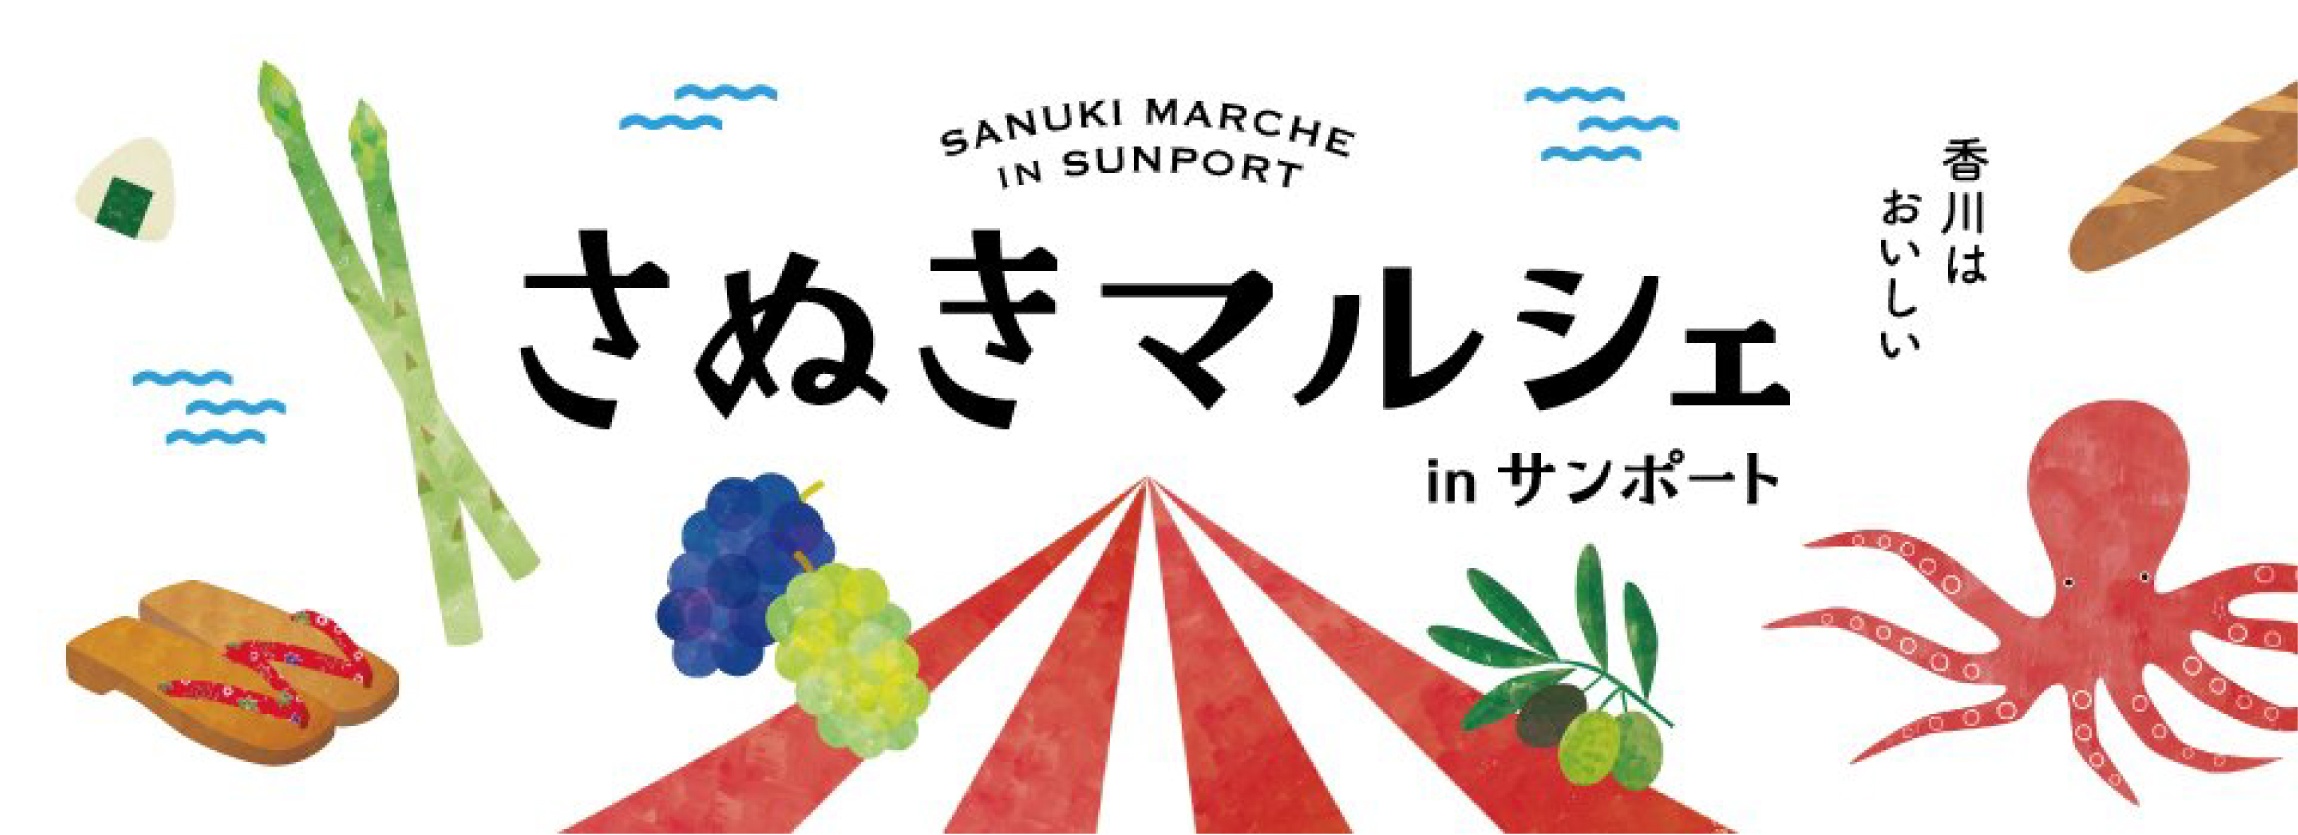 SANUKI MARCHE IN SUNPORT さぬきマルシェ in サンポート 香川はおいしい